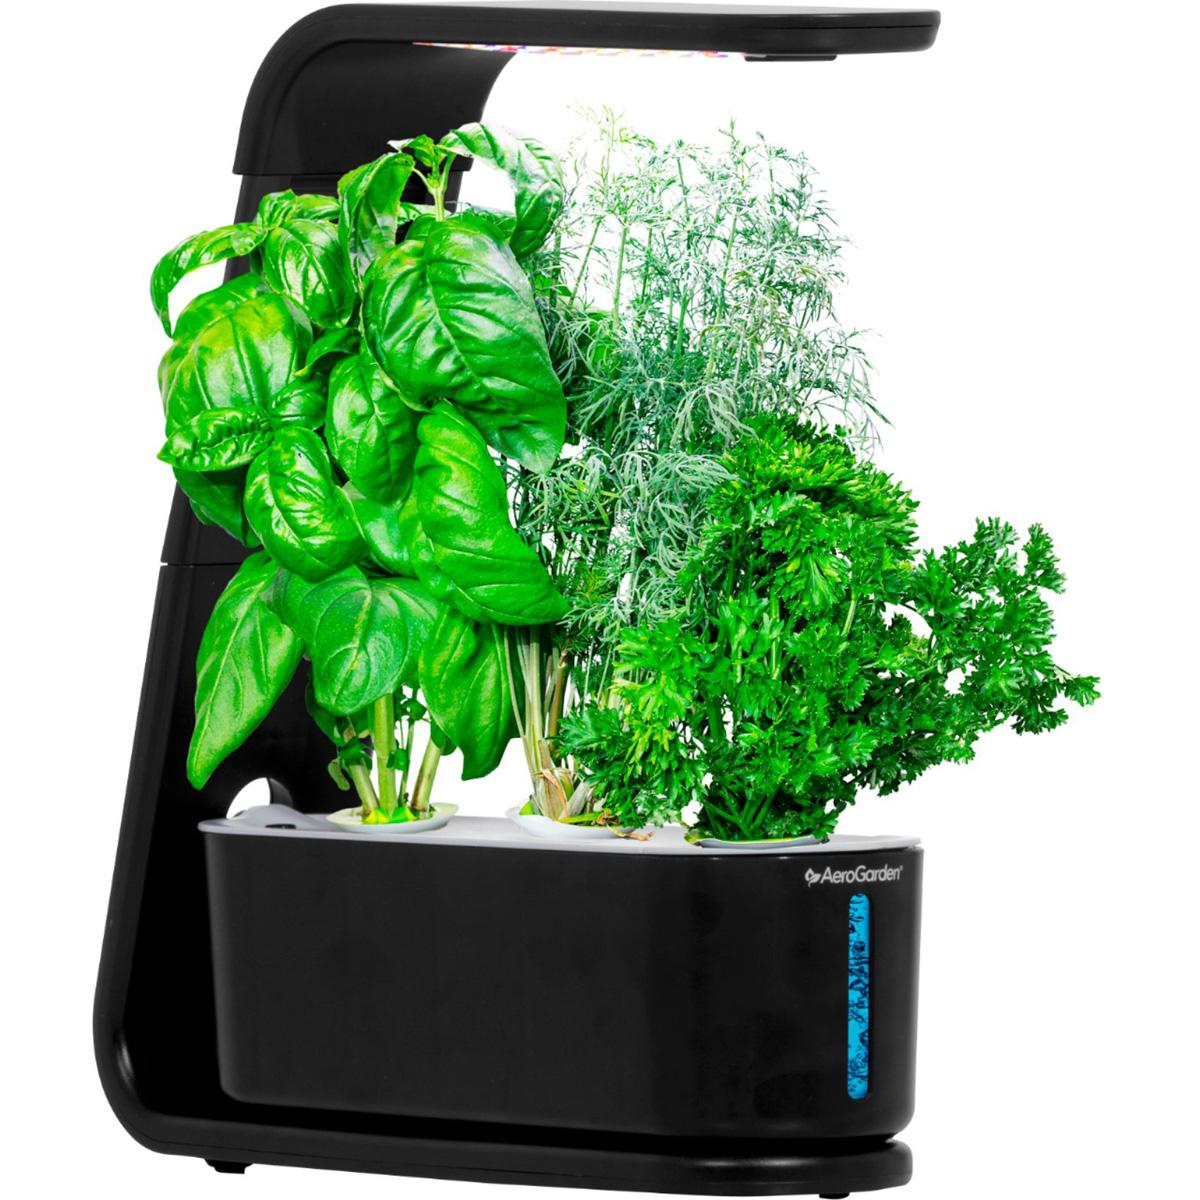 AeroGarden Sprout Easy Setup Healthy Cooking Garden for $59.99 Shipped